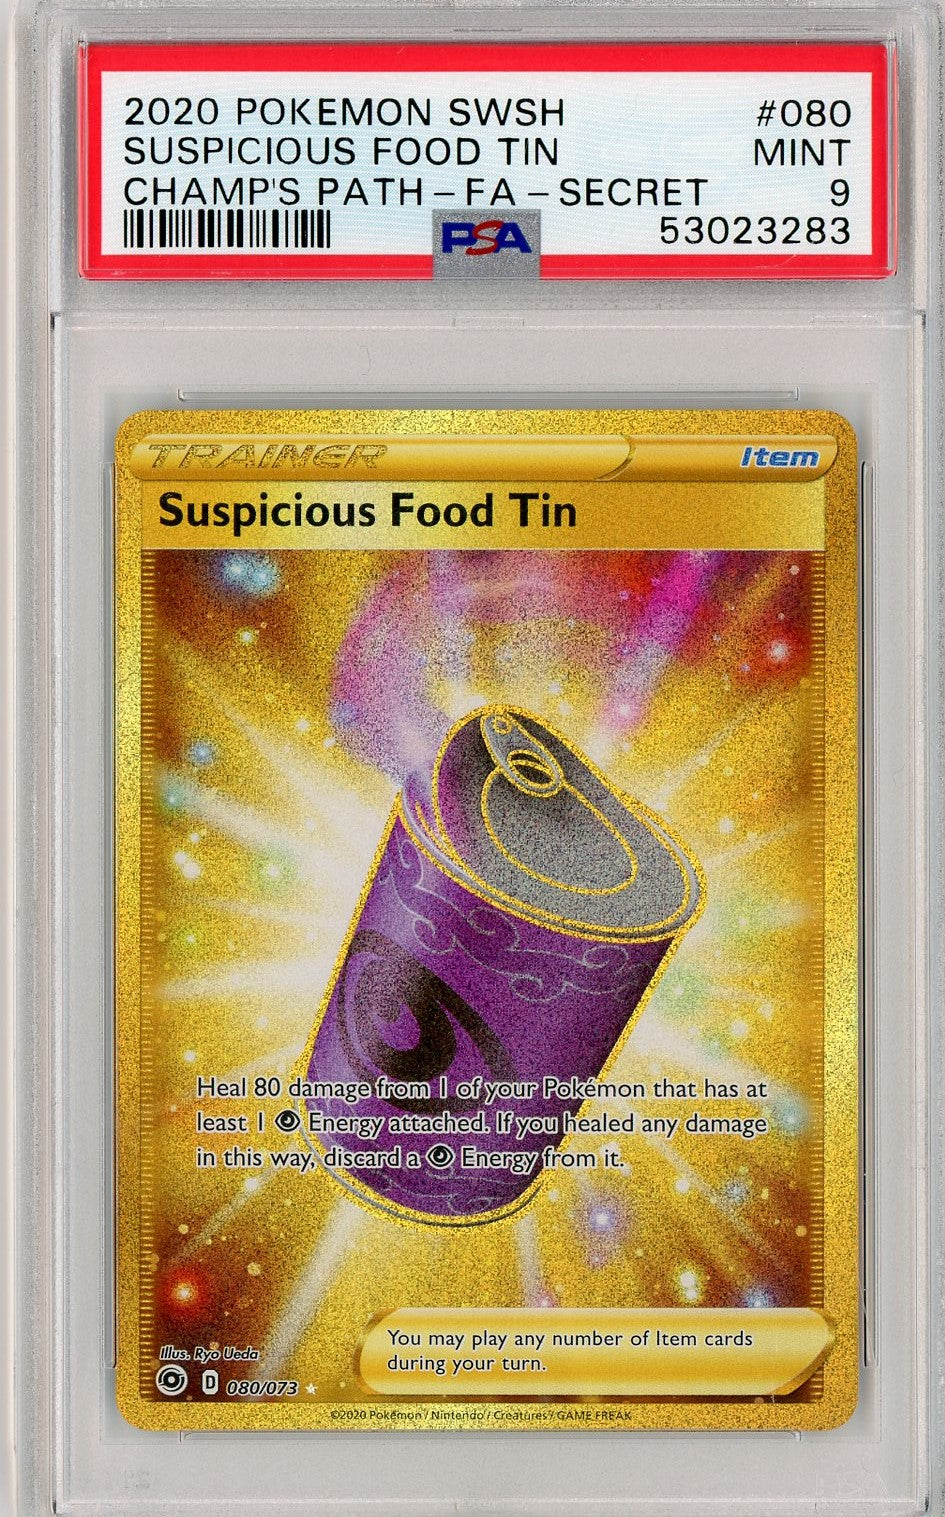 PSA 9 MINT Suspicious Food Tin (Secret) 080/073 - Champion's Path 2020